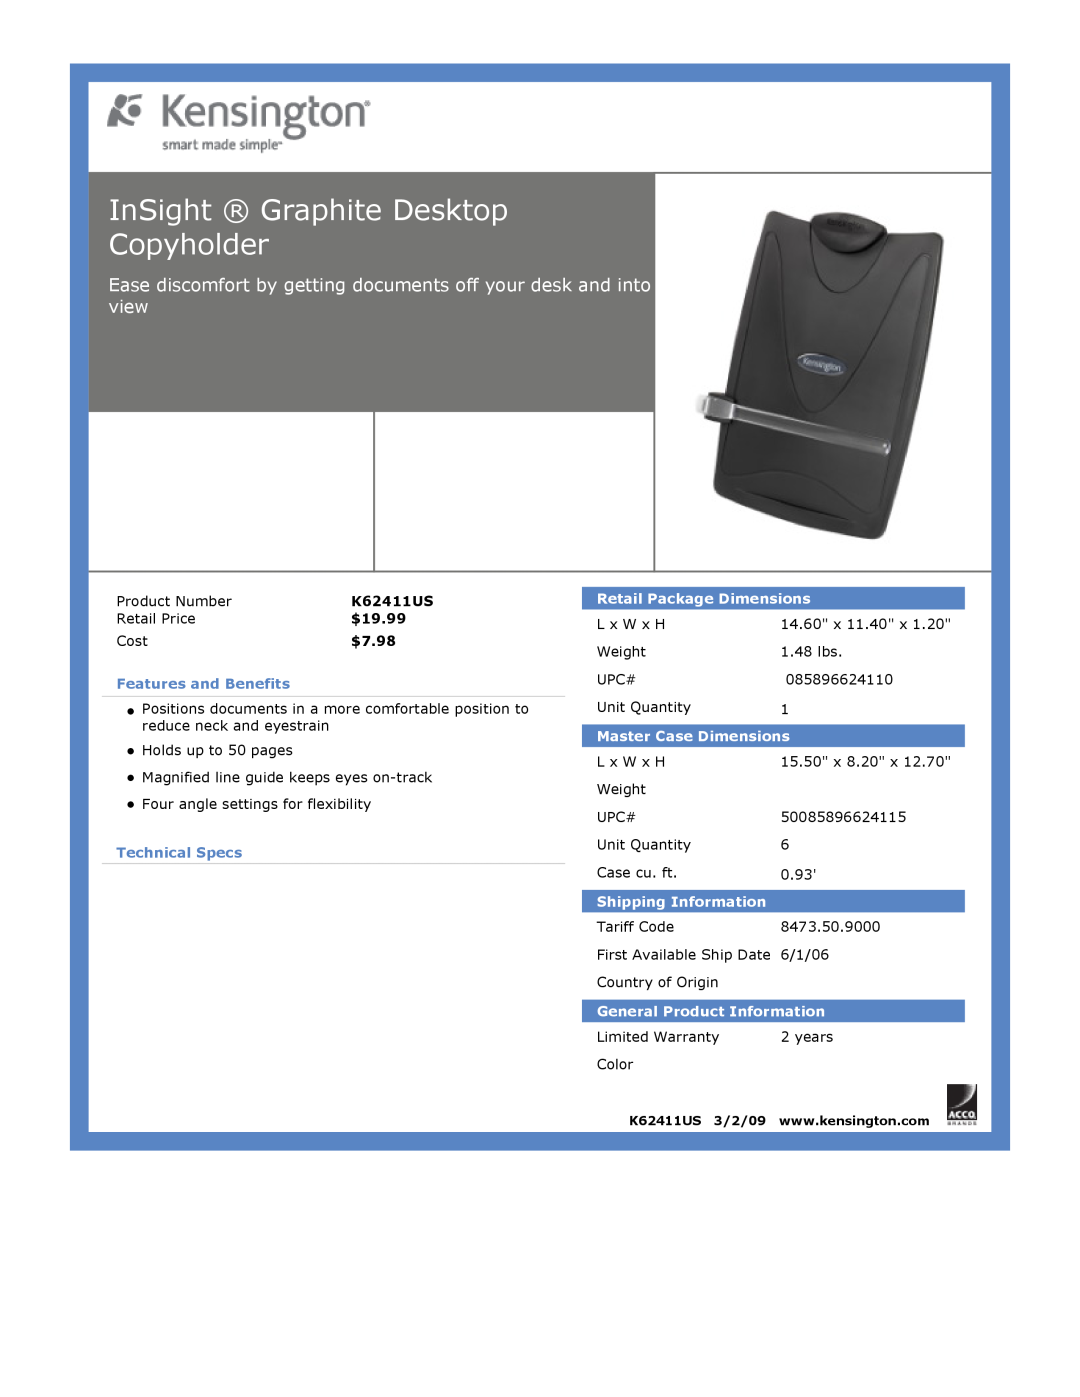 Kensington K62411US dimensions InSight Graphite Desktop Copyholder, $19.95, Features and Benefits, Technical Specs 